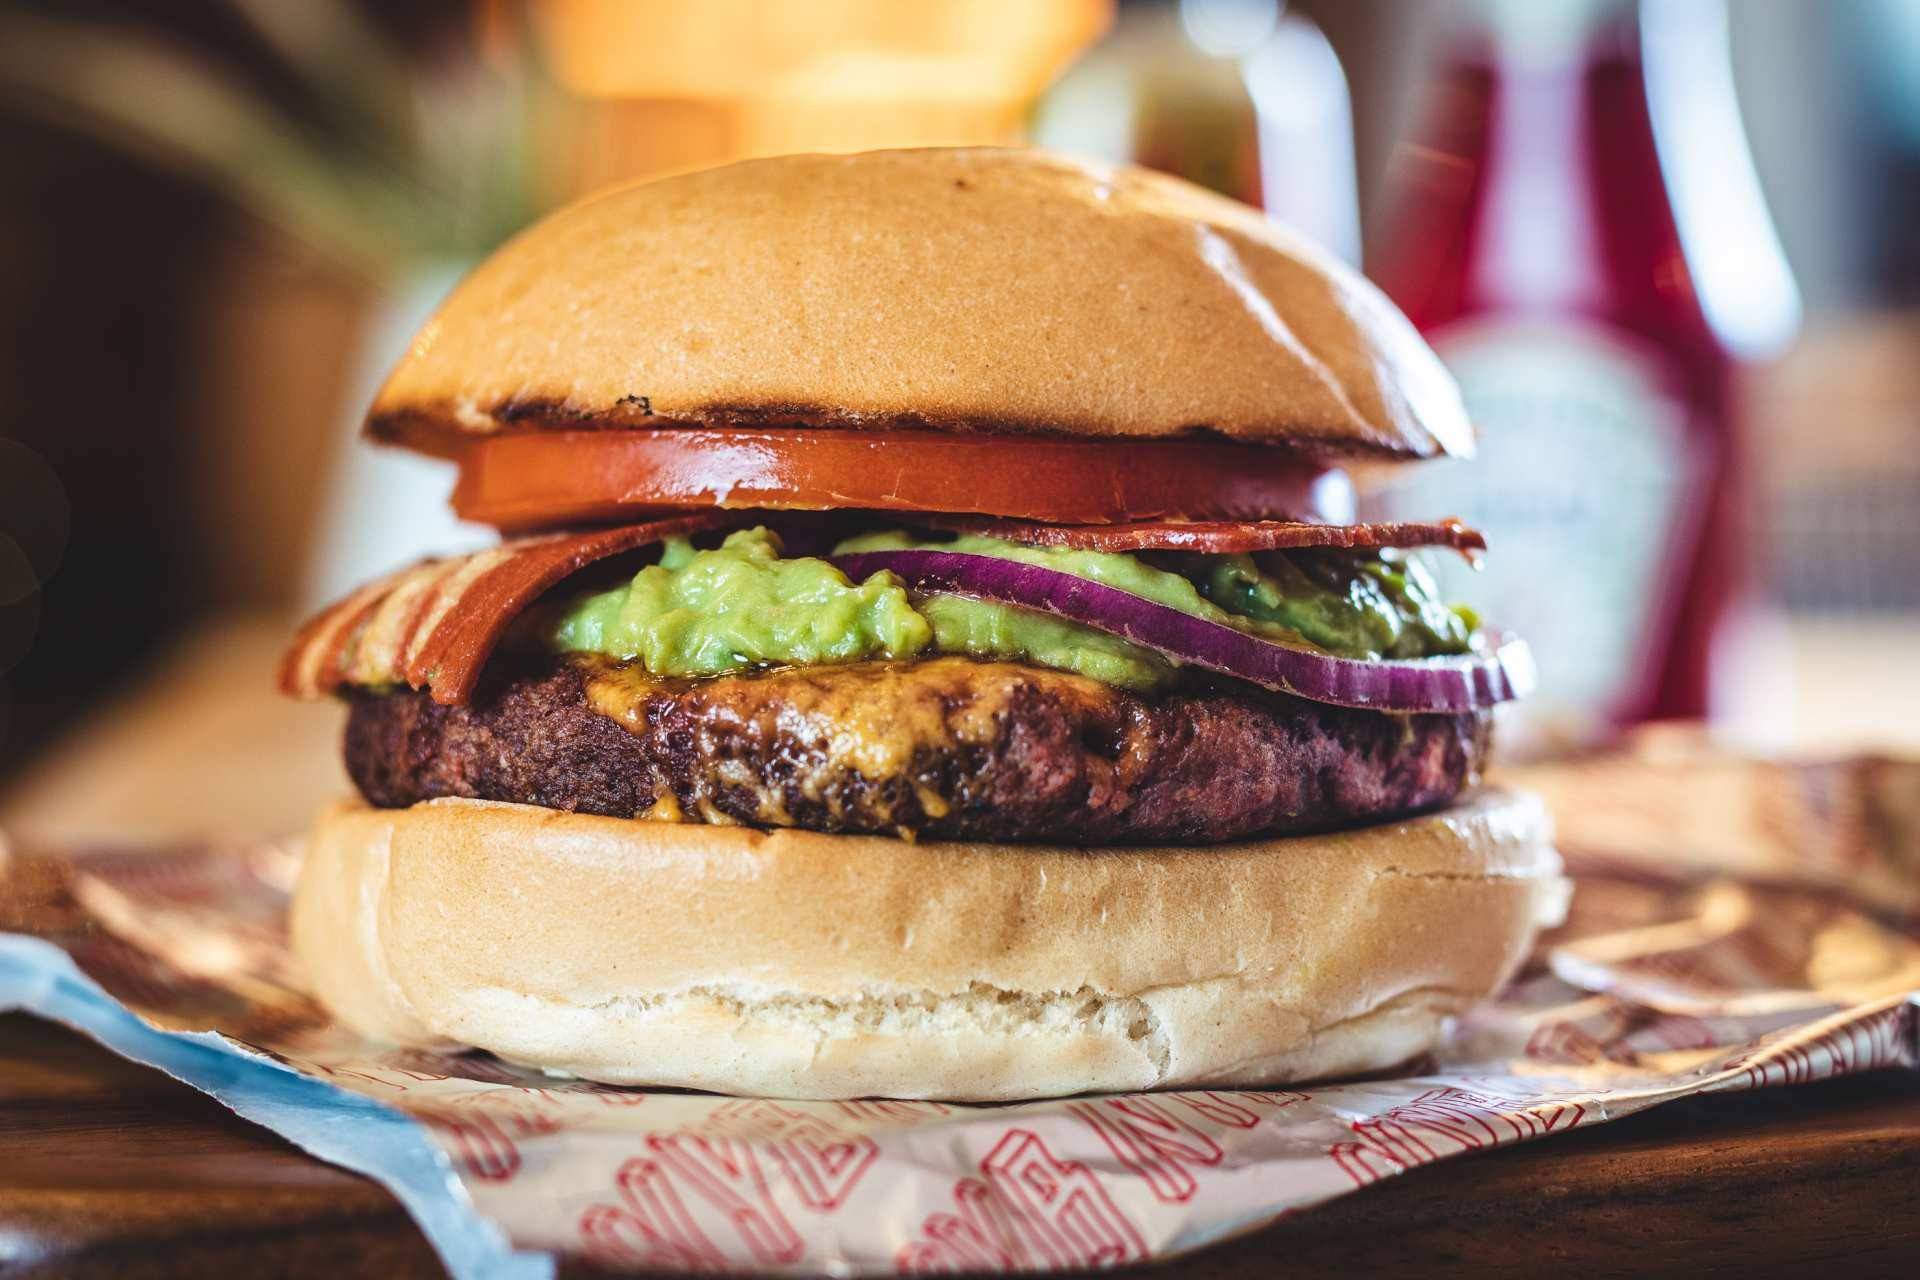 En NYB encontrarás cuatro opciones de Burgers Green, con bacon y queso también veganos.
